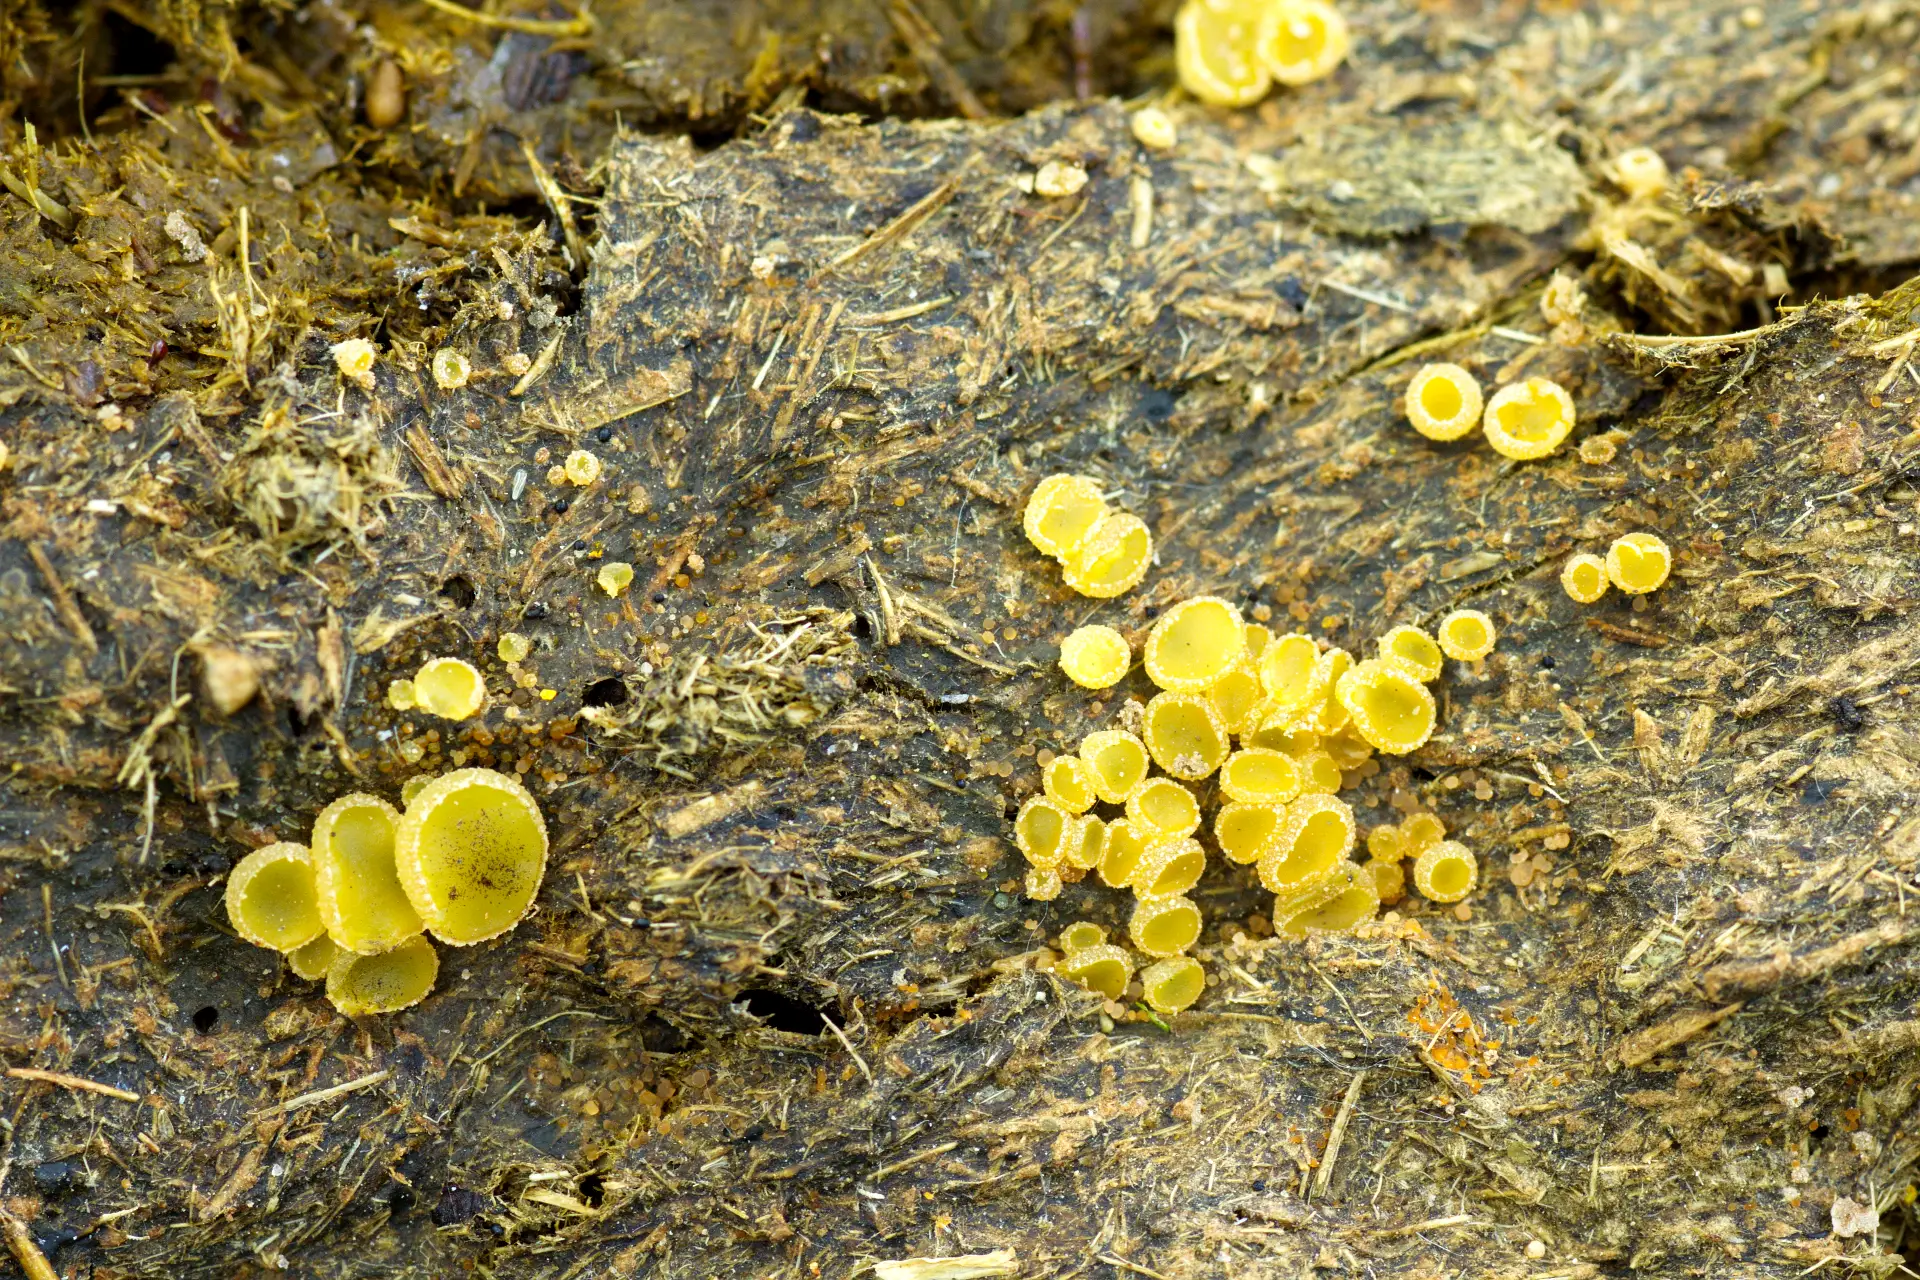 ASCOBOLUS fungi